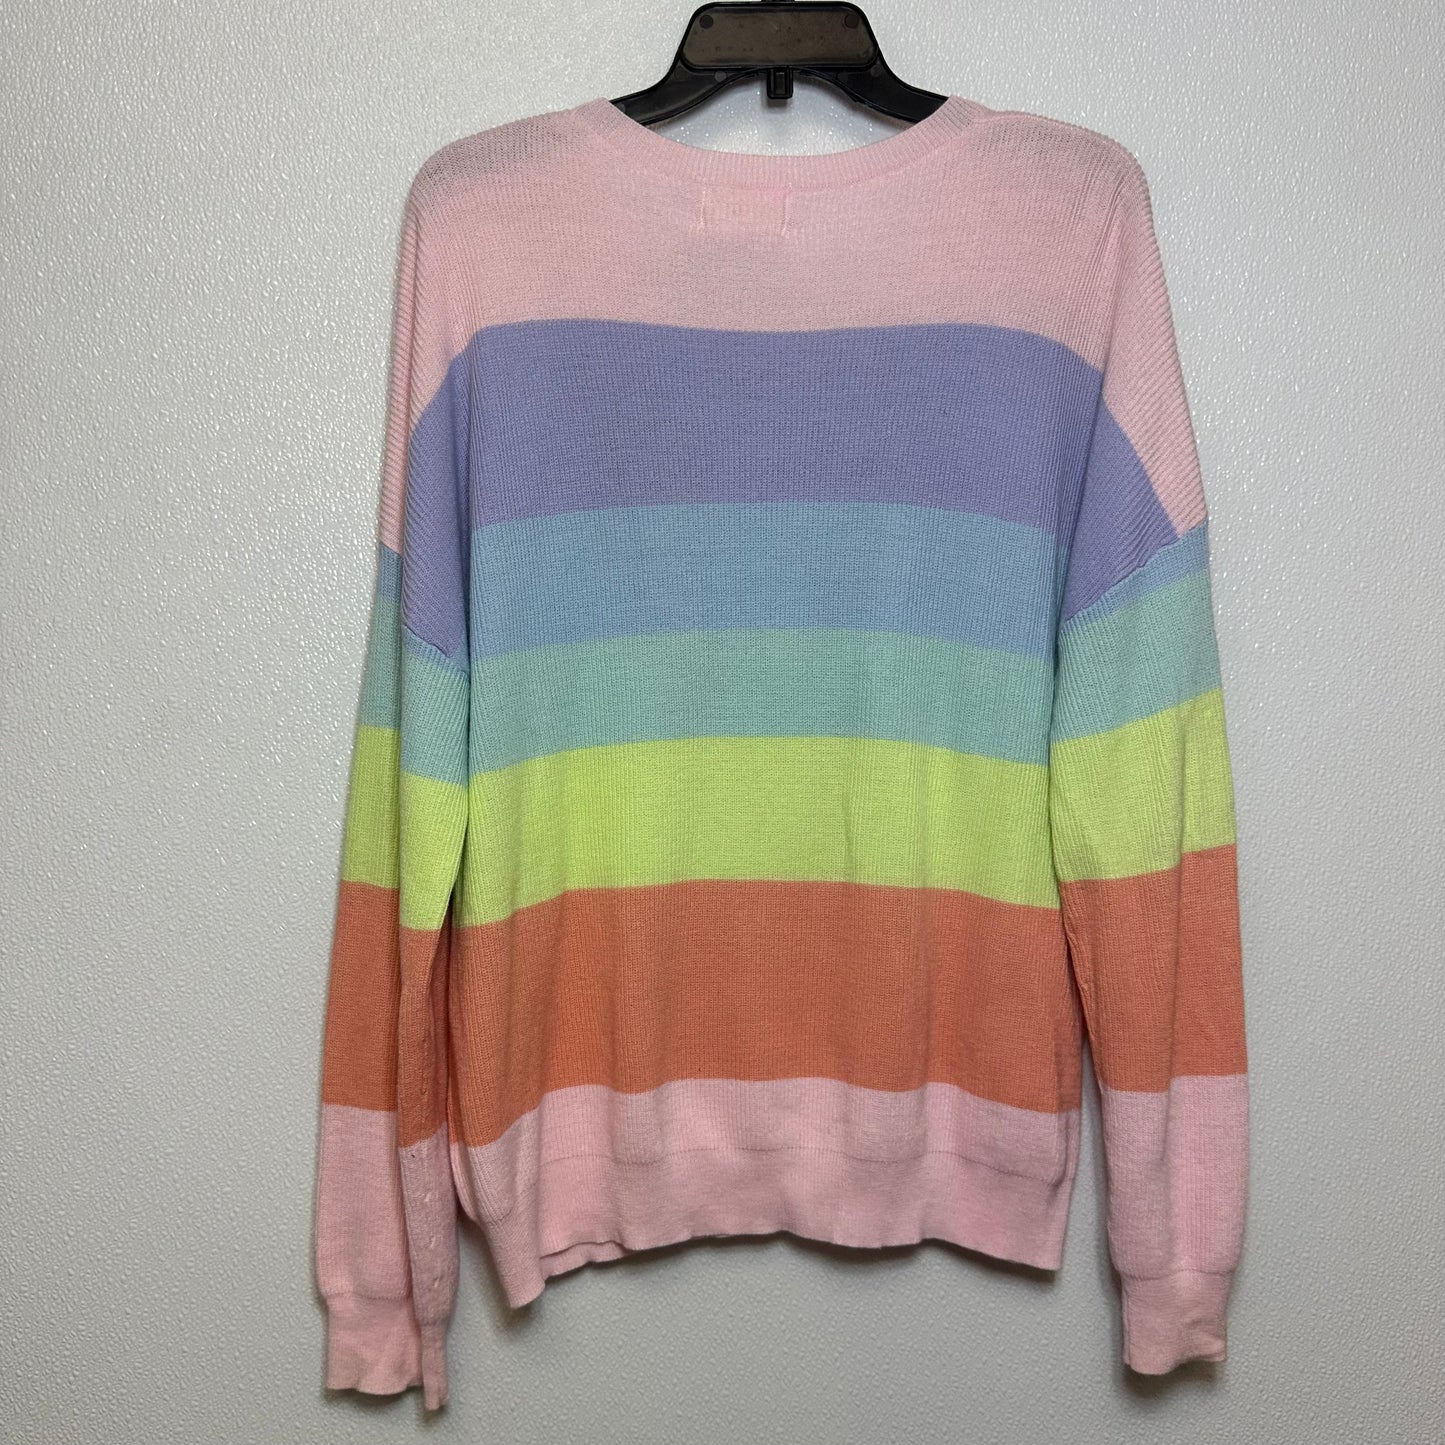 Sweater By Vestique  Size: L